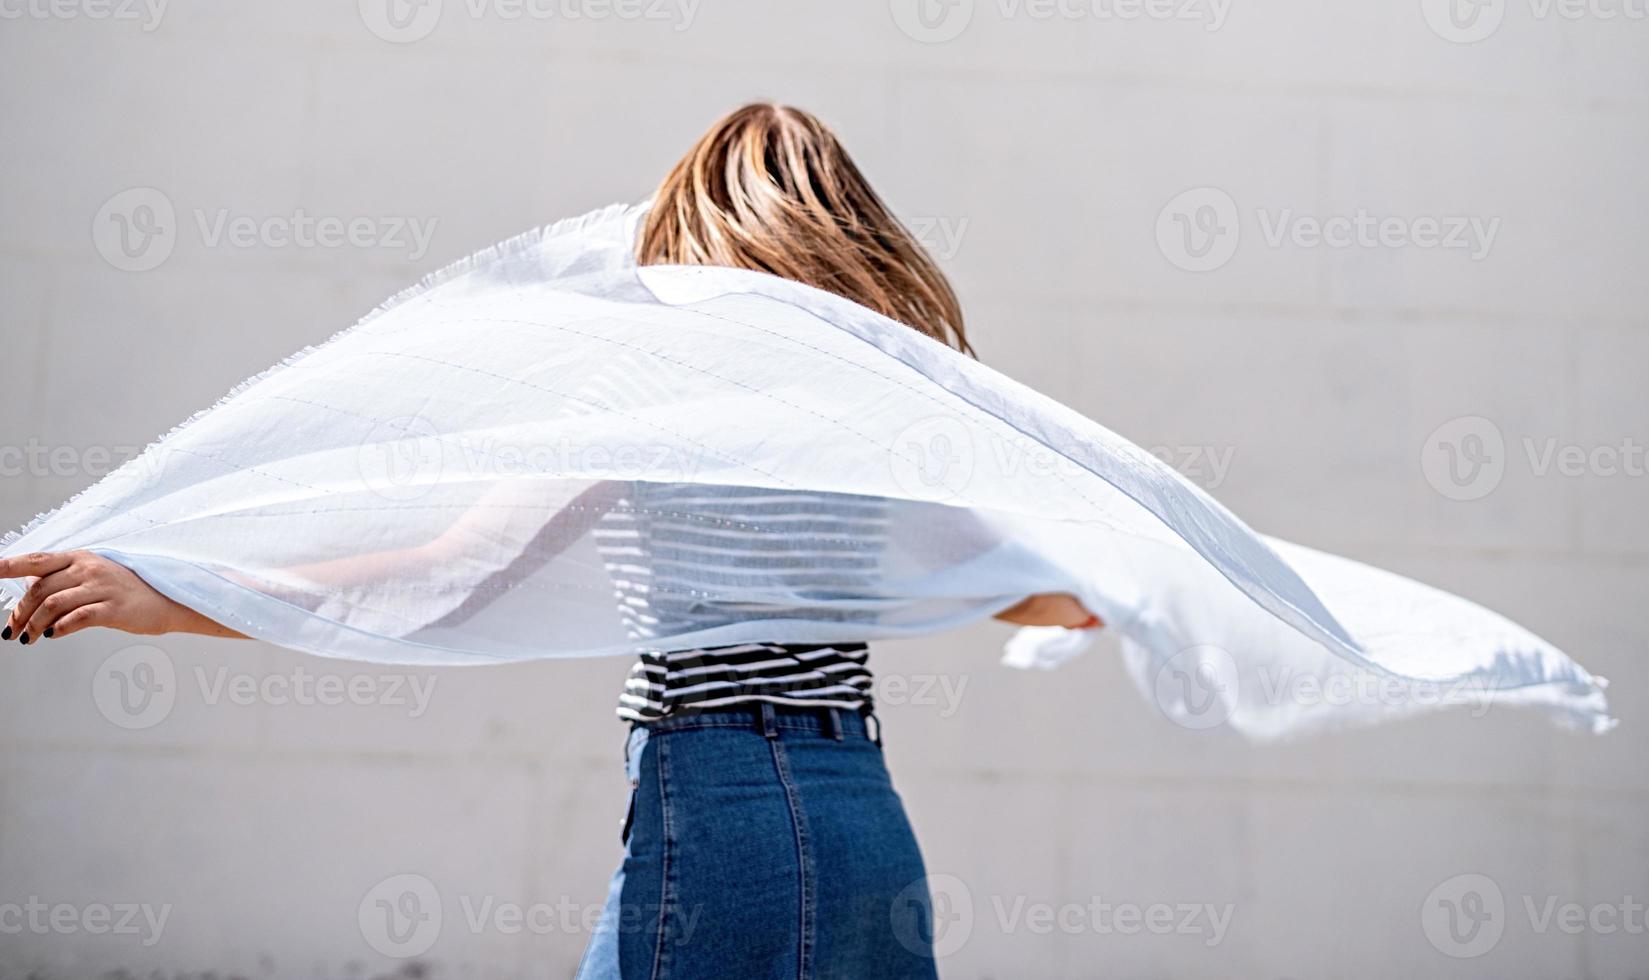 jonge vrouw met een blauwe stof die zich omdraait op een grijze achtergrond foto